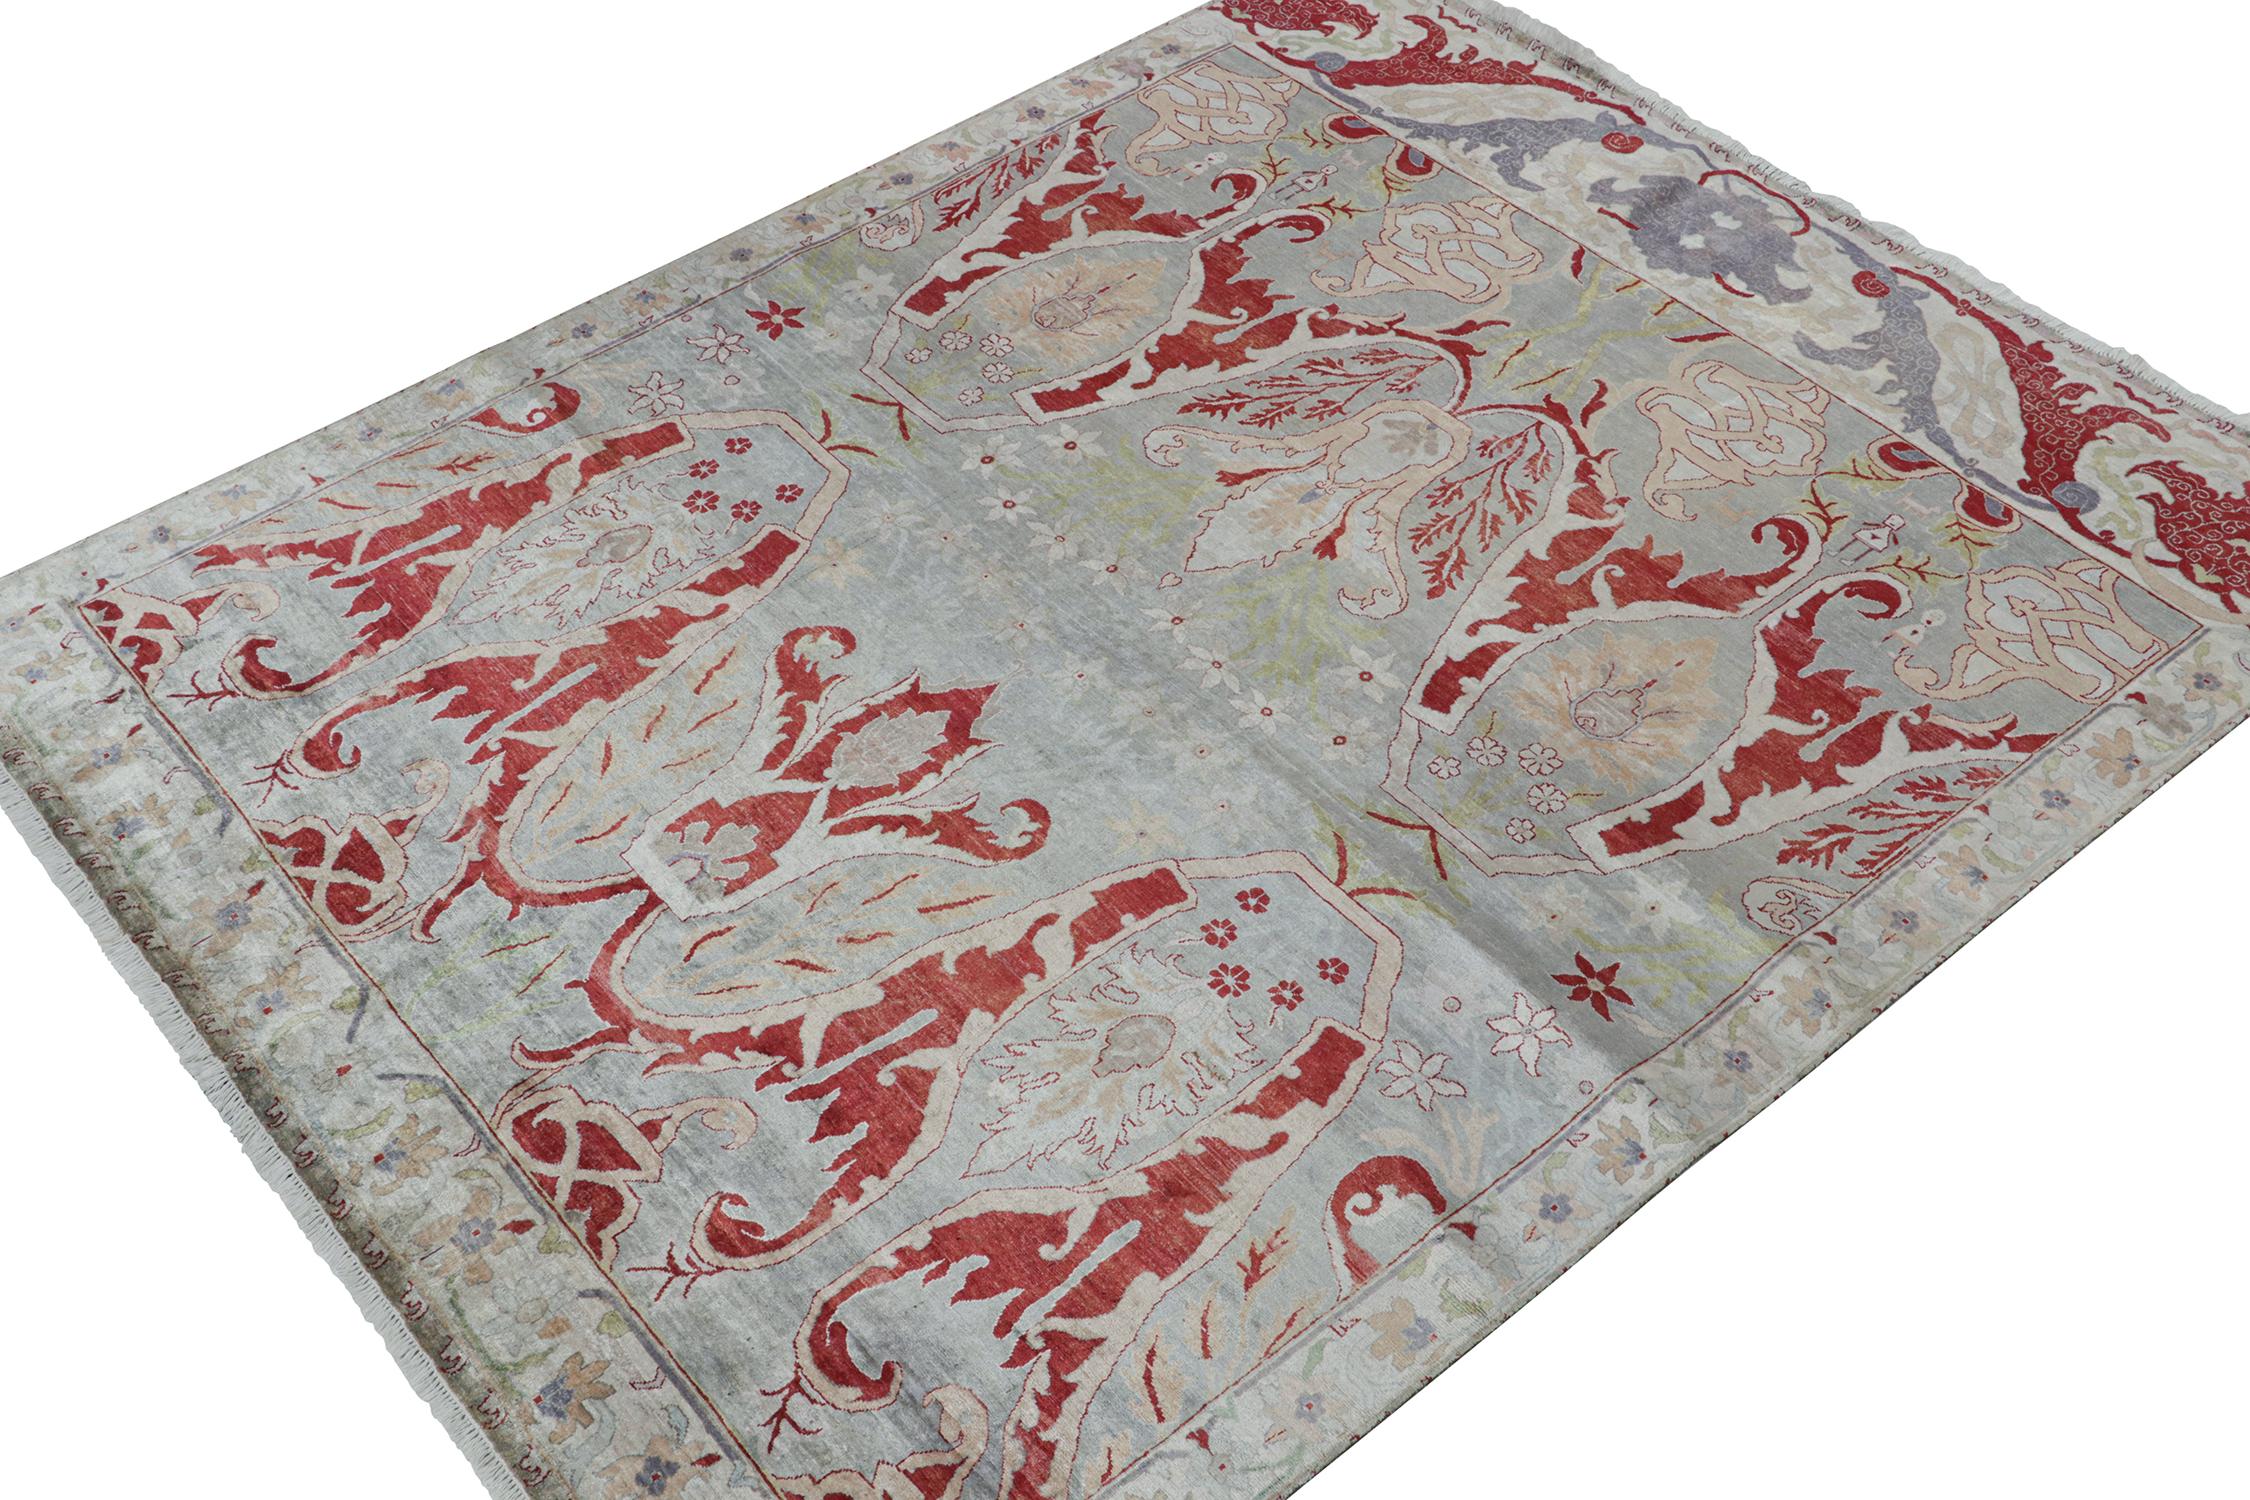 Ein 8x9 Teppich, inspiriert von traditionellen Teppichstilen, aus der Modern Classics Collection'S von Rug & Kilim. Handgeknüpft in Wolle, spielt ein außergewöhnliches Rot neben silbergrauen und weißen Blumenmustern auf blauen Untertönen mit